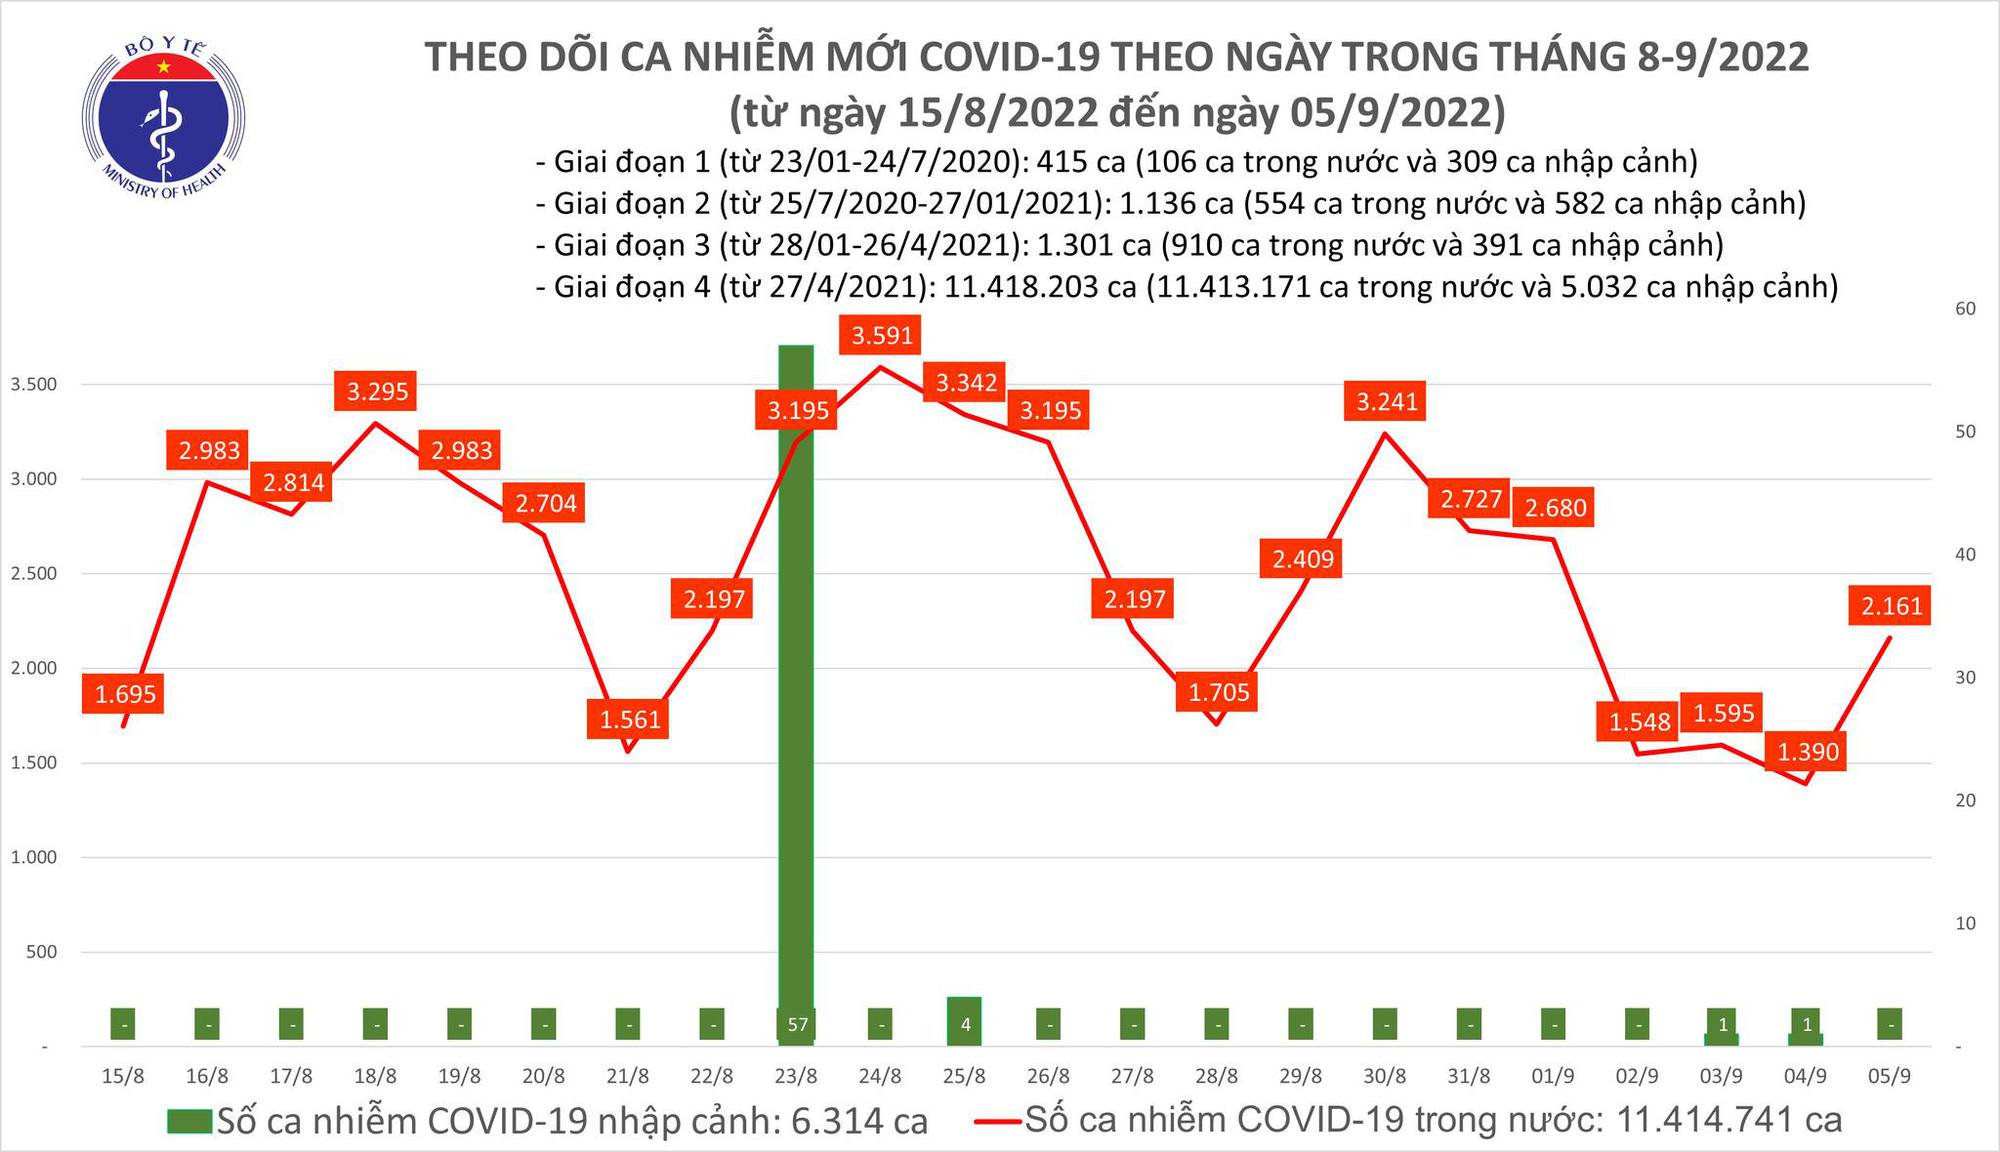 Covid-19 ngày 4/9: Gần 2.200 ca mắc mới, 2 ca tử vong tại Tây Ninh và Thanh Hóa - Ảnh 1.